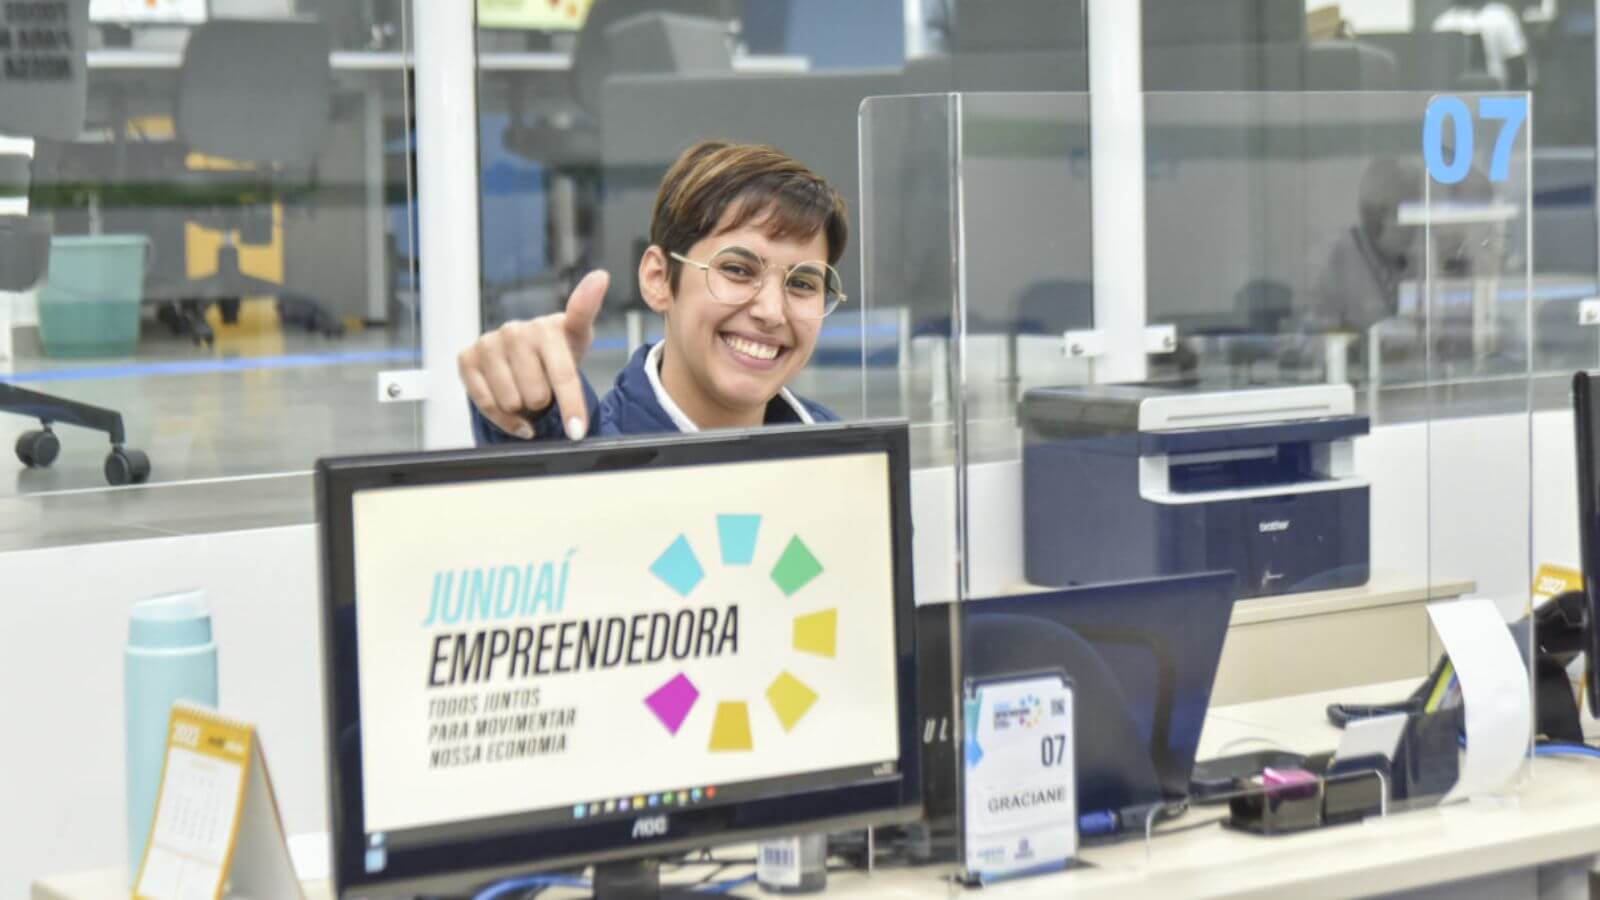 Portal Jundiaí Empreendedora inclui desde vagas de estágio até vagas de emprego em Jundiaí